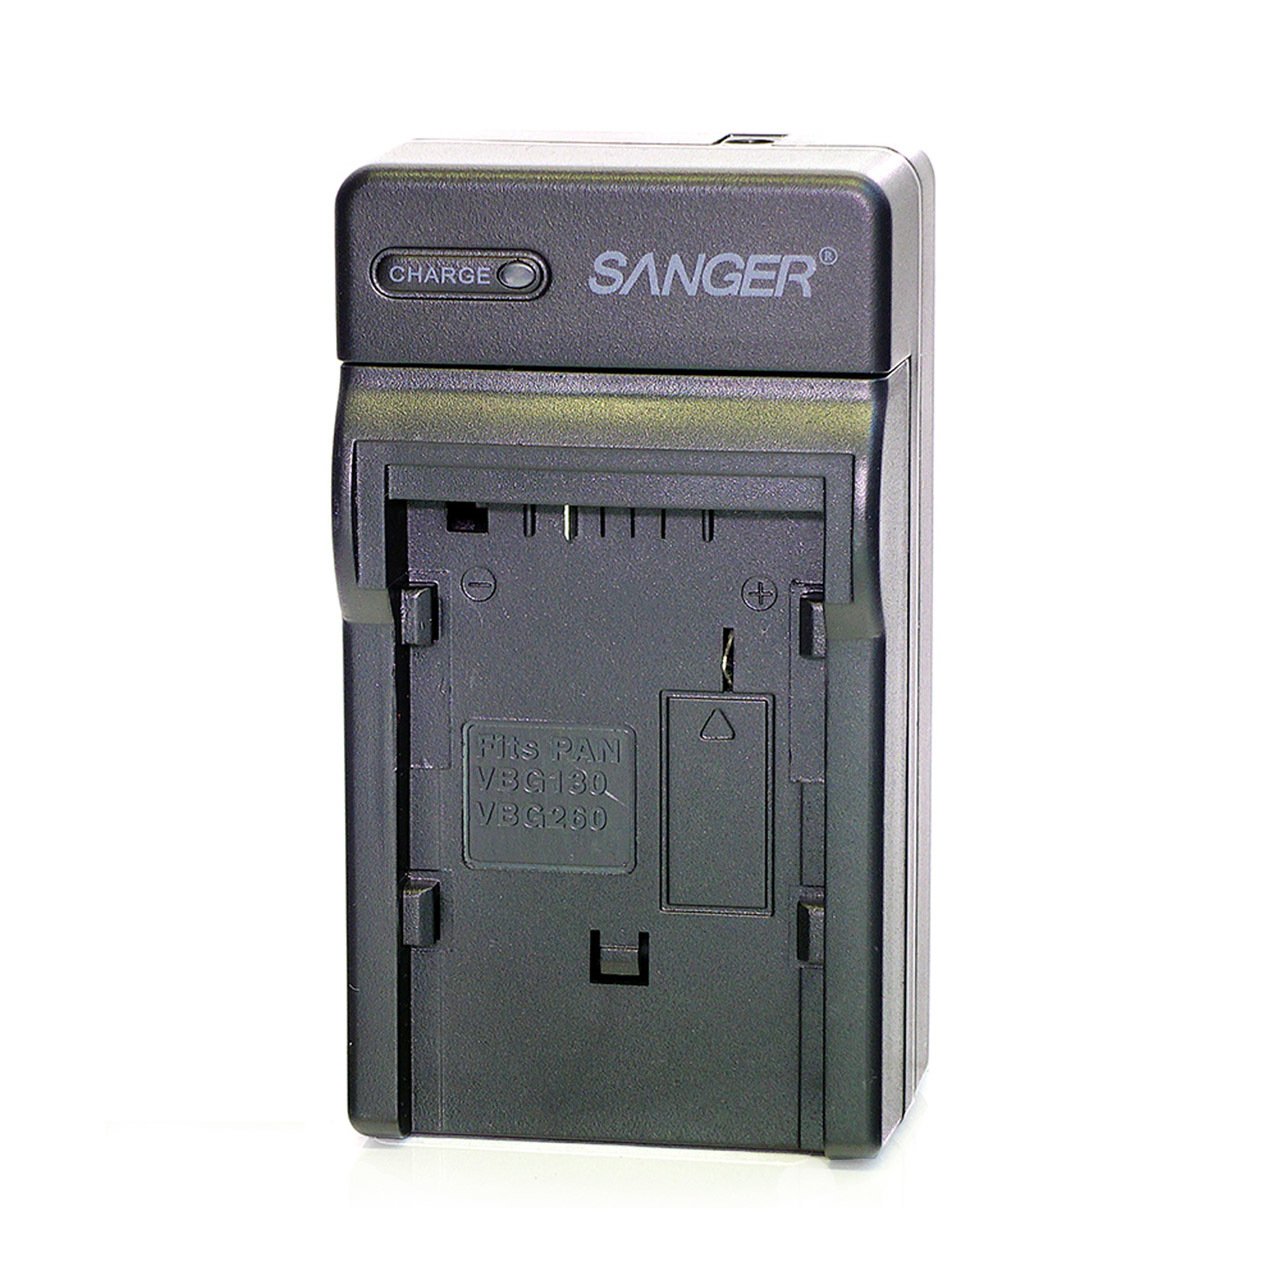 Sanger VBG070 Panasonic Video Kamera Batarya Şarj Aleti